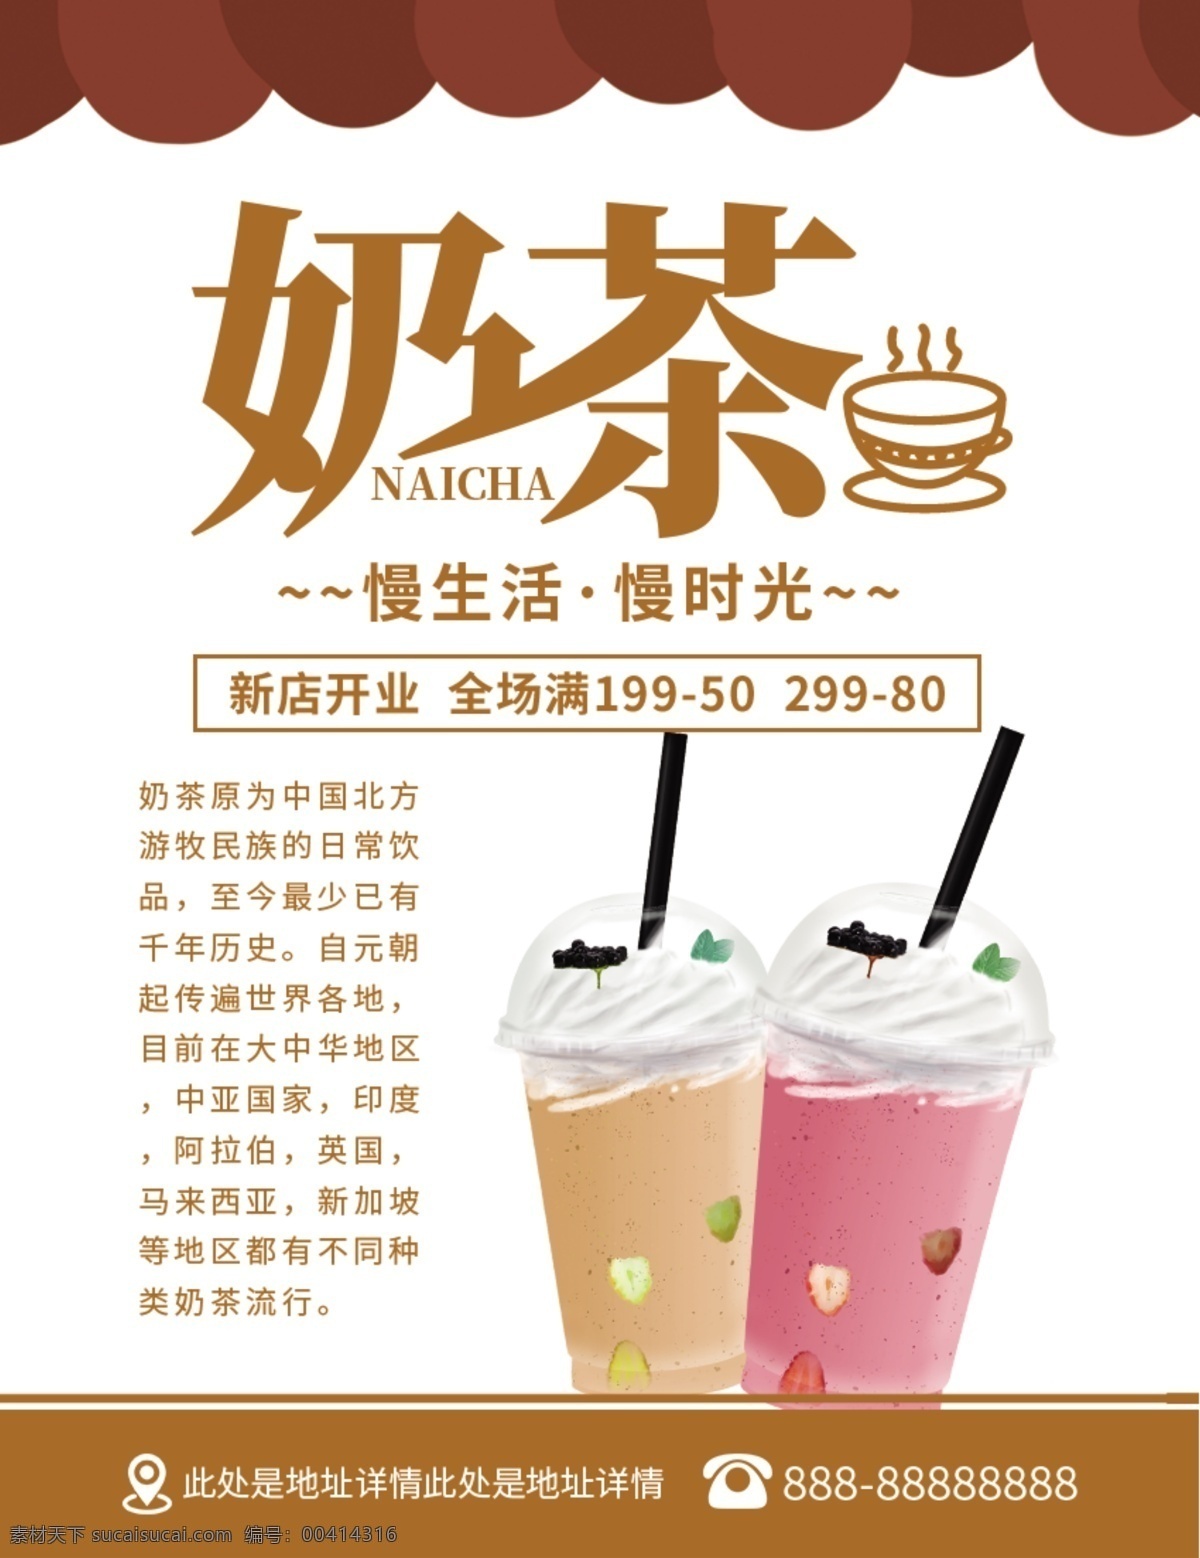 橘 色 简约 奶茶 奶茶店 宣传 菜单 宣传单 奶茶宣传菜单 奶茶店菜单 饮料 下午茶 奶茶促销